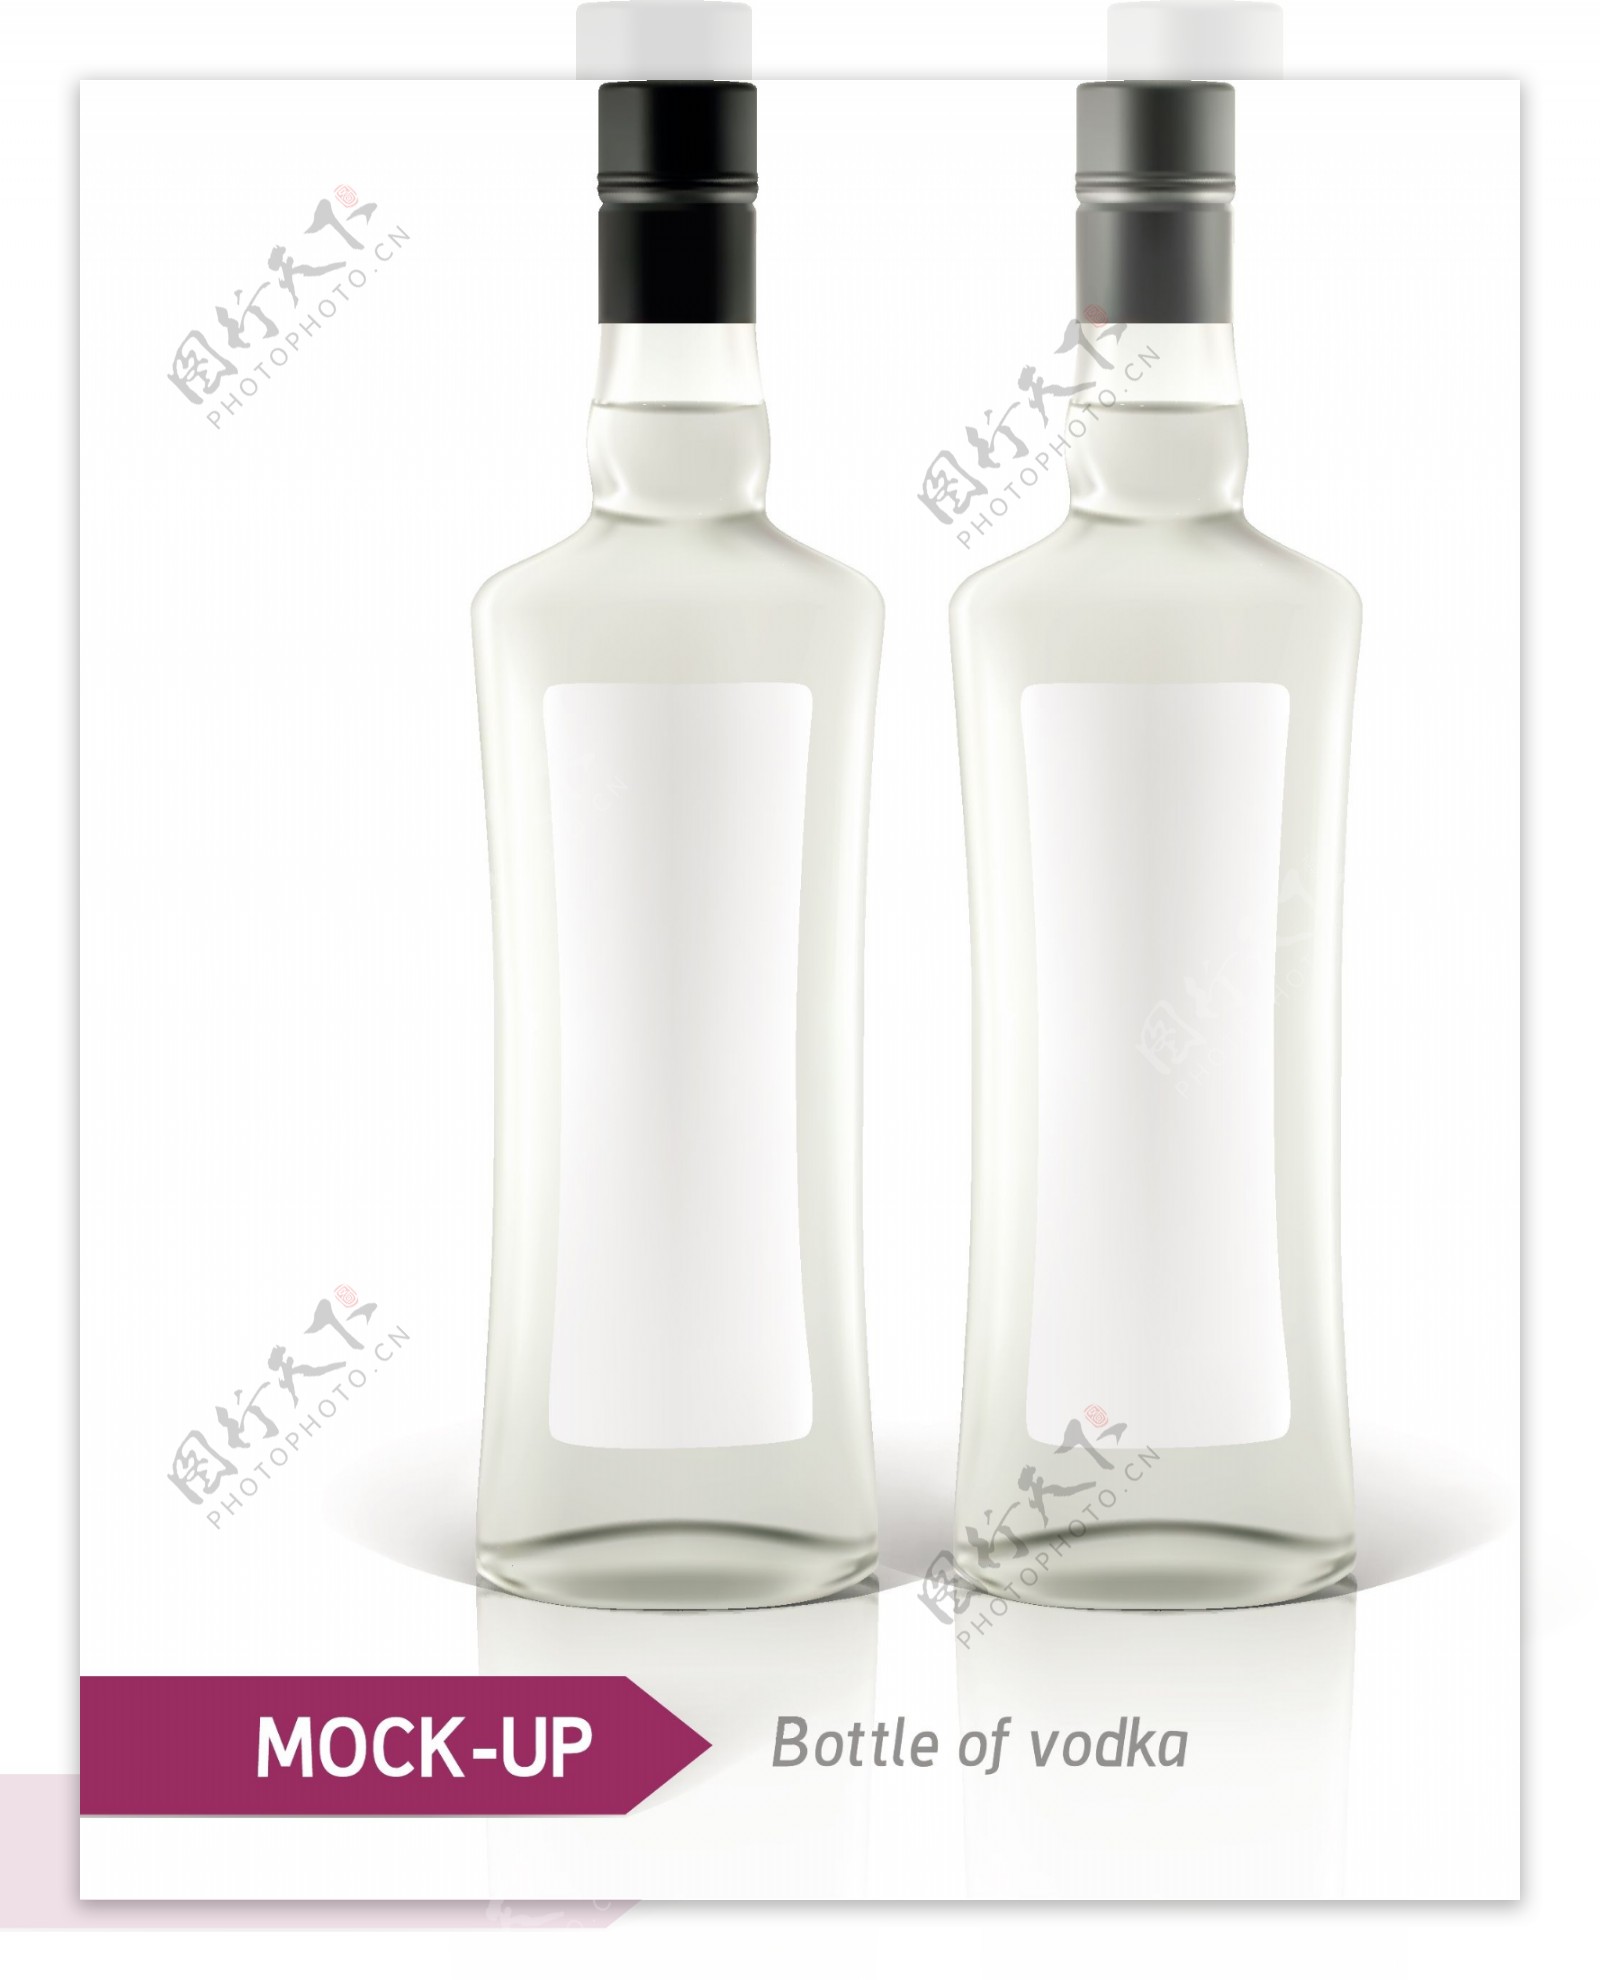 伏特加酒瓶设计矢量素材